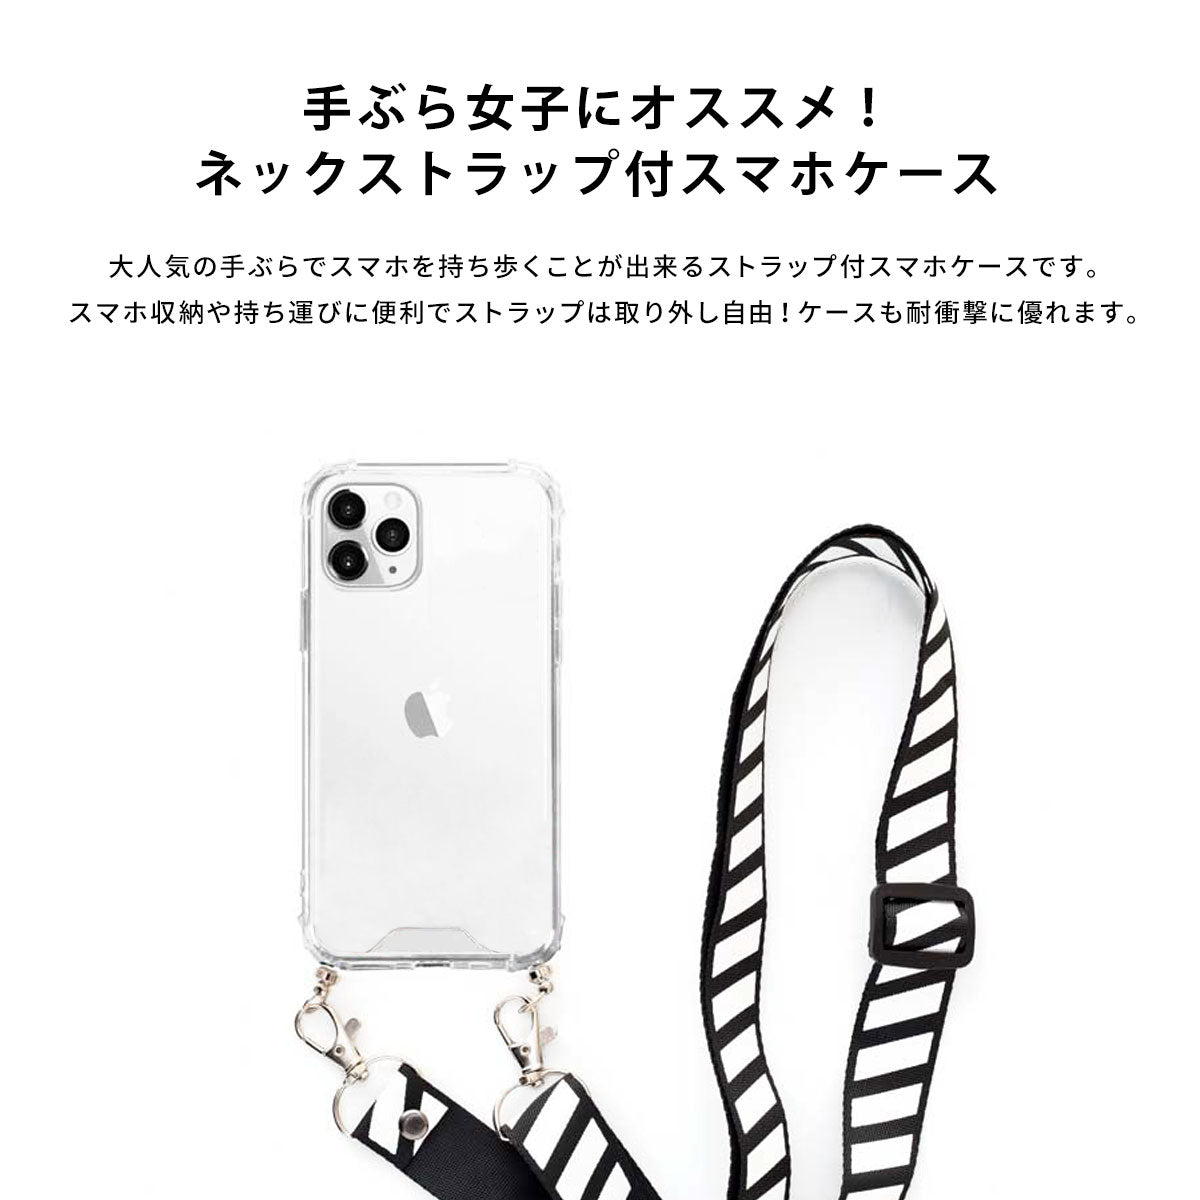 【手ぶら女子に】ネックストラップ スマホケース  iPhone13 iPone12 かわいい おしゃれ  ネックストラップ付き 夏 海 名入れ